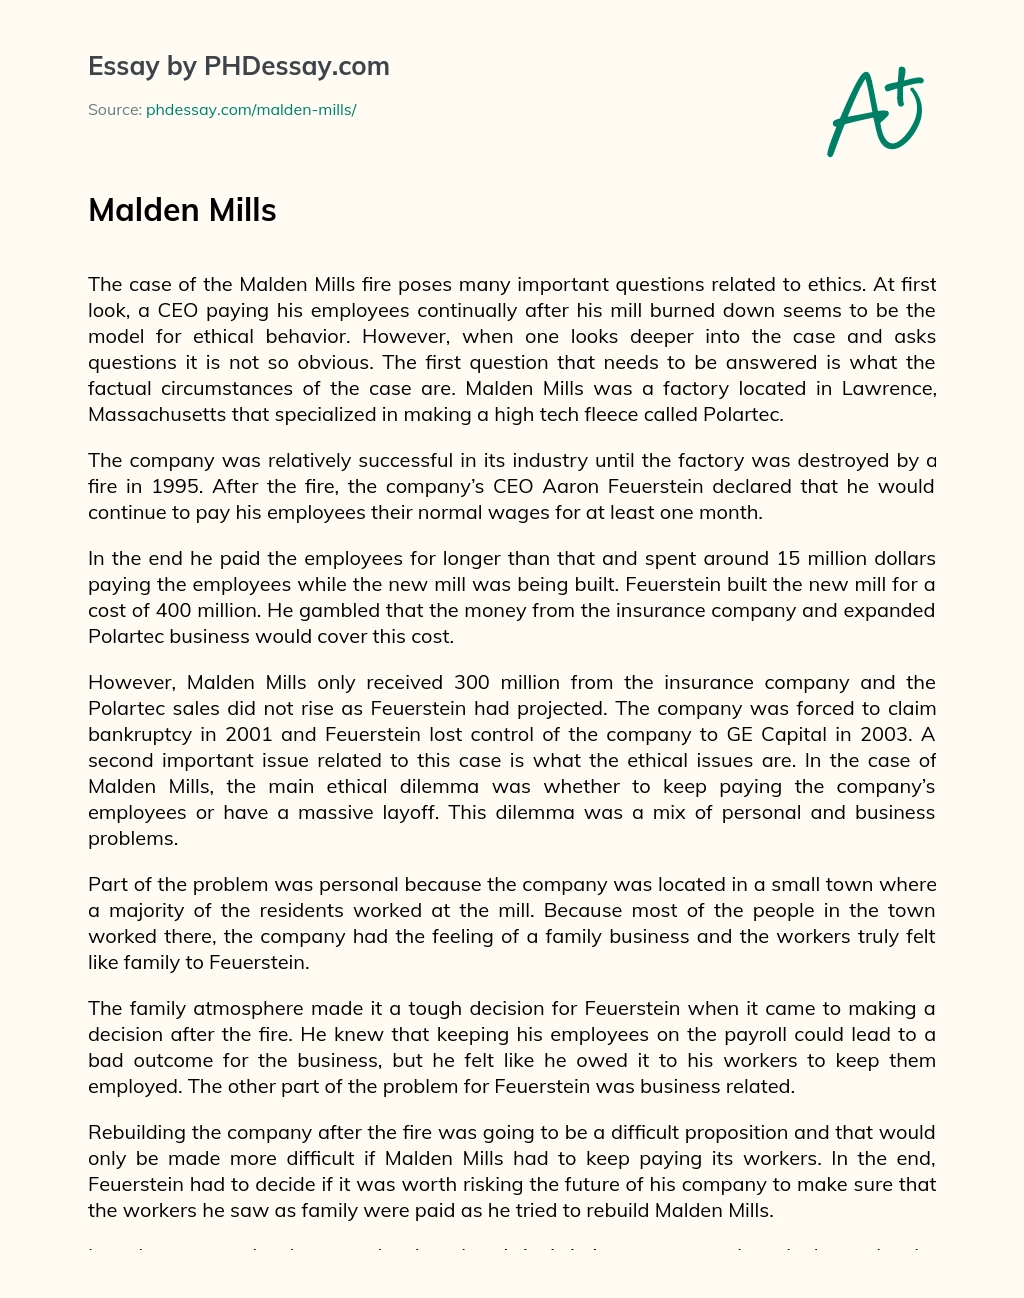 Malden Mills essay